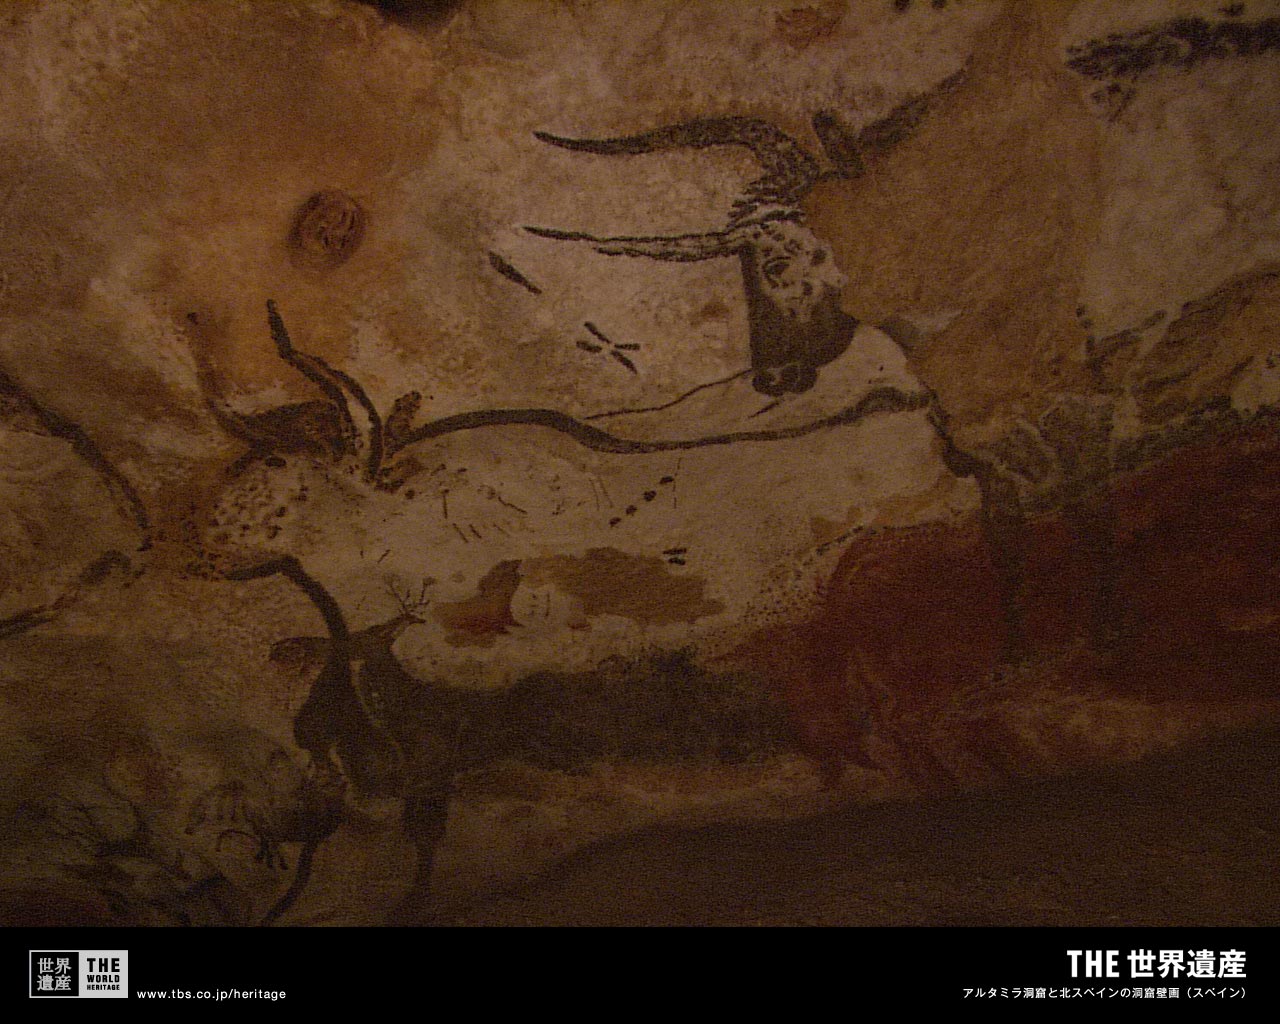 特集 アルタミラ洞窟と北スペインの洞窟壁画 闇に浮かぶ神秘の絵 Tbsテレビ The世界遺産